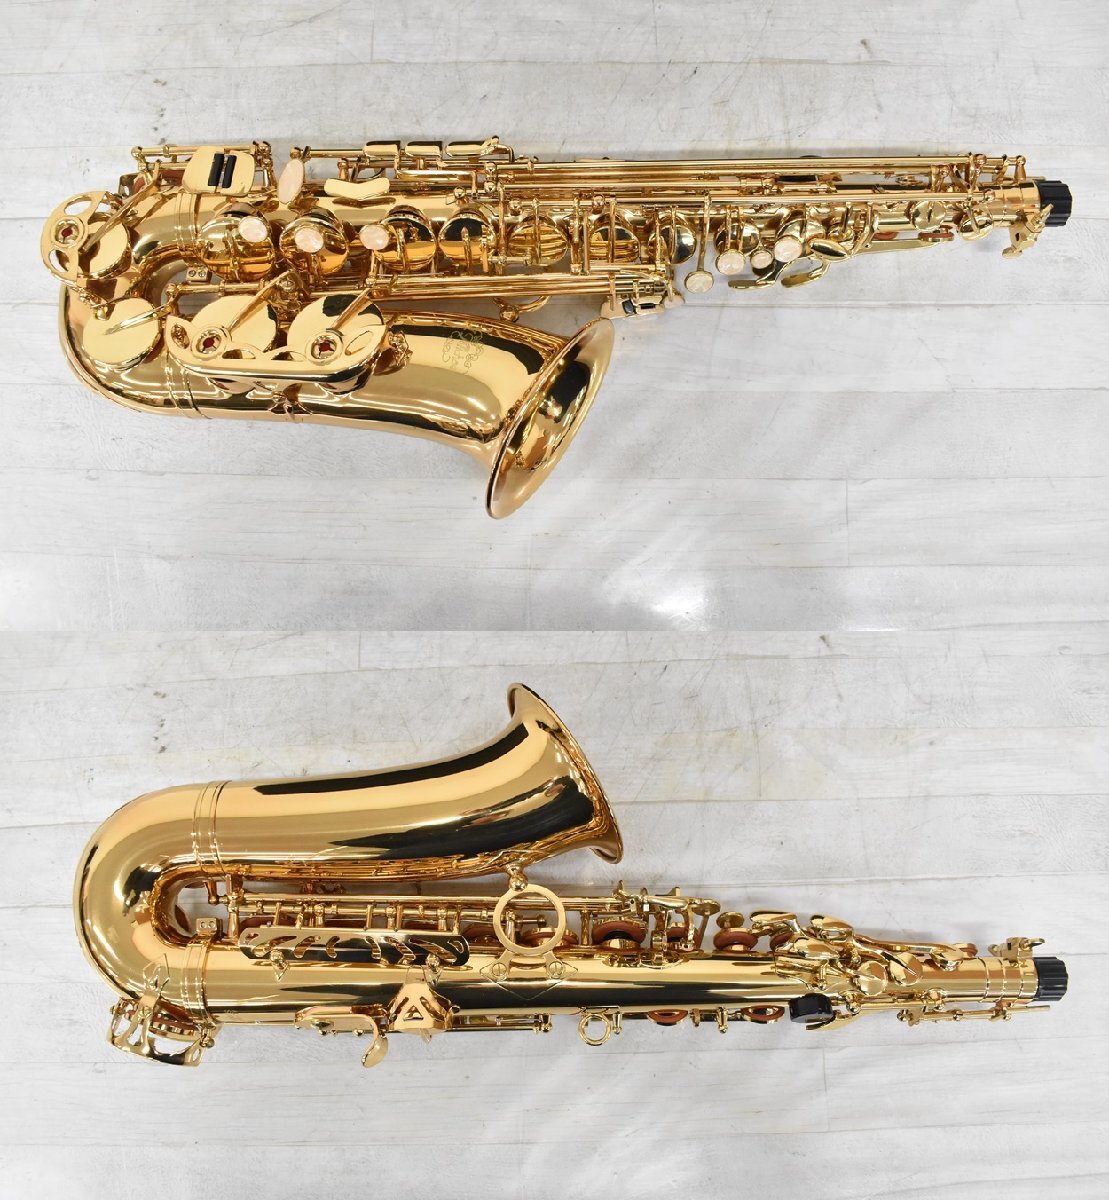 Σ1799 used J.Michael AL-500 AL-500 SI0003 J. Michael alto saxophone 